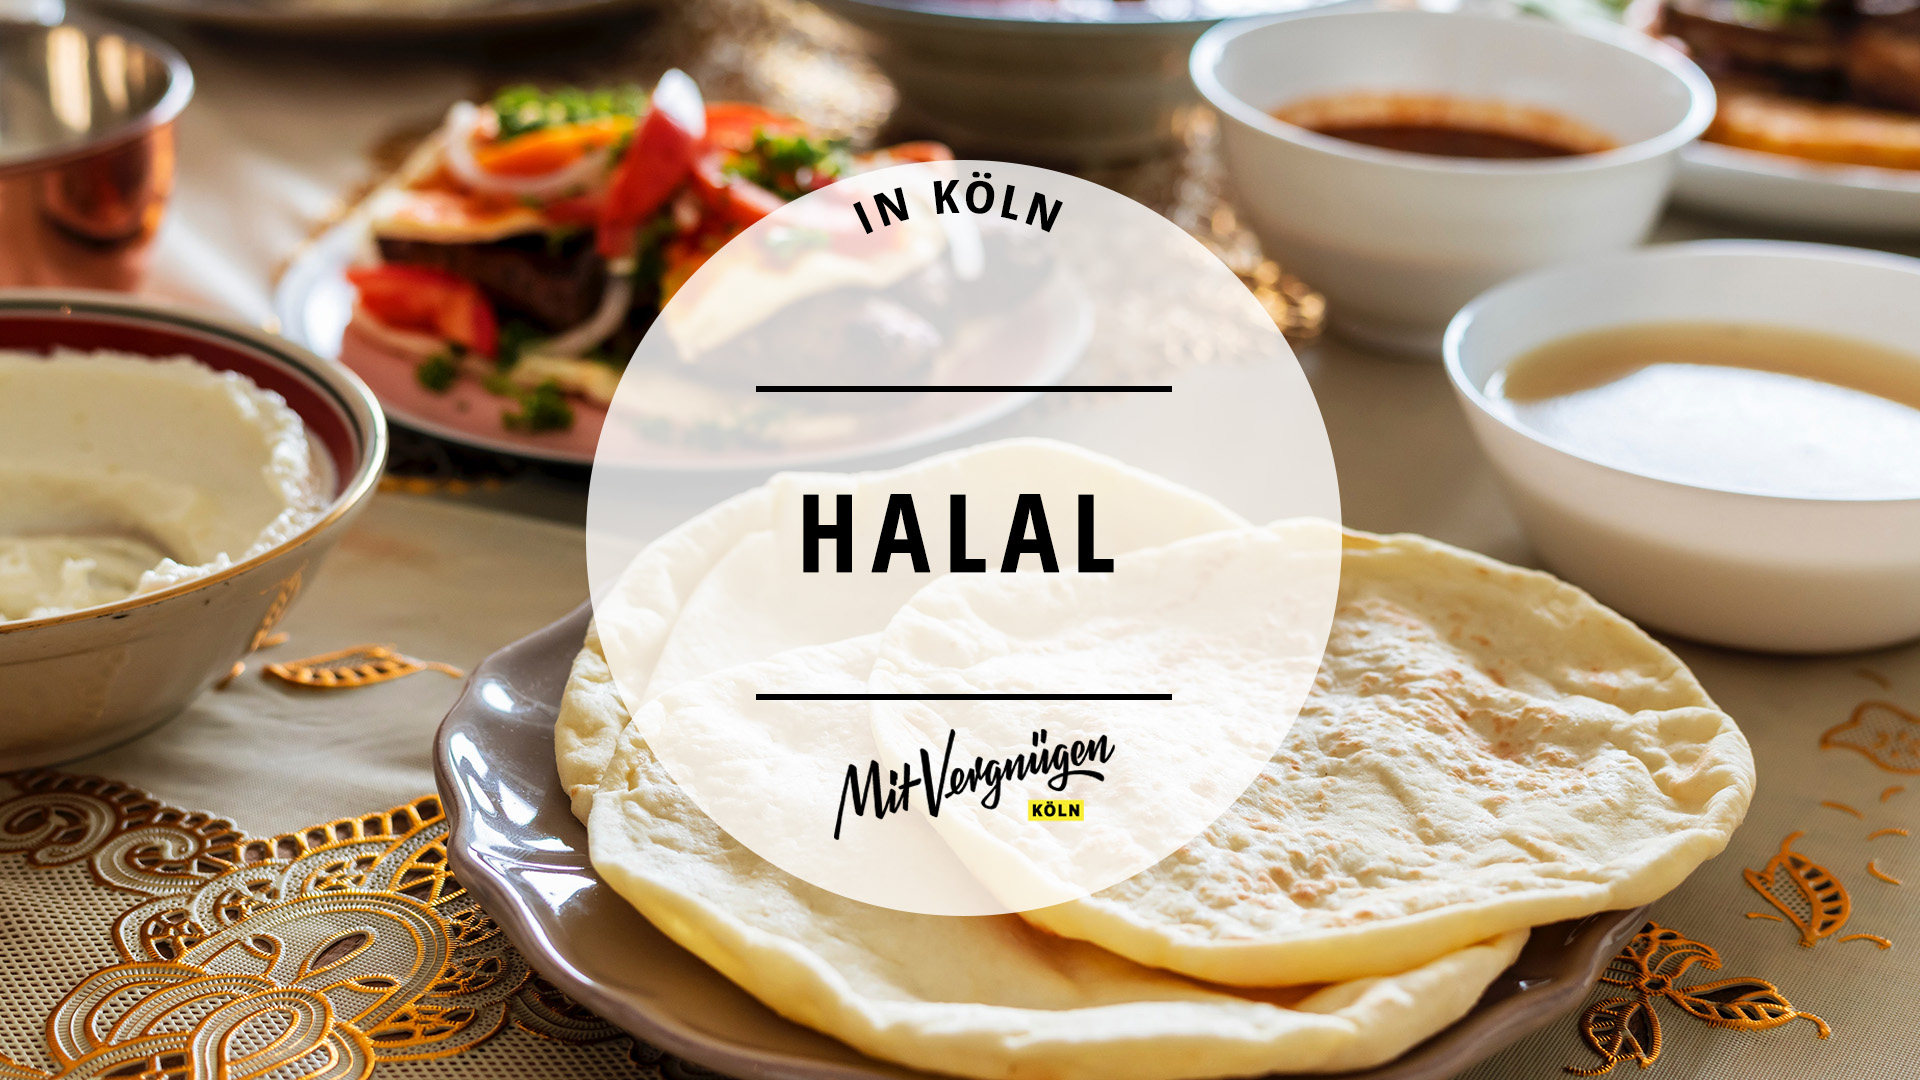 11 Restaurants In Koln In Denen Ihr Halal Essen Konnt Mit Vergnugen Koln